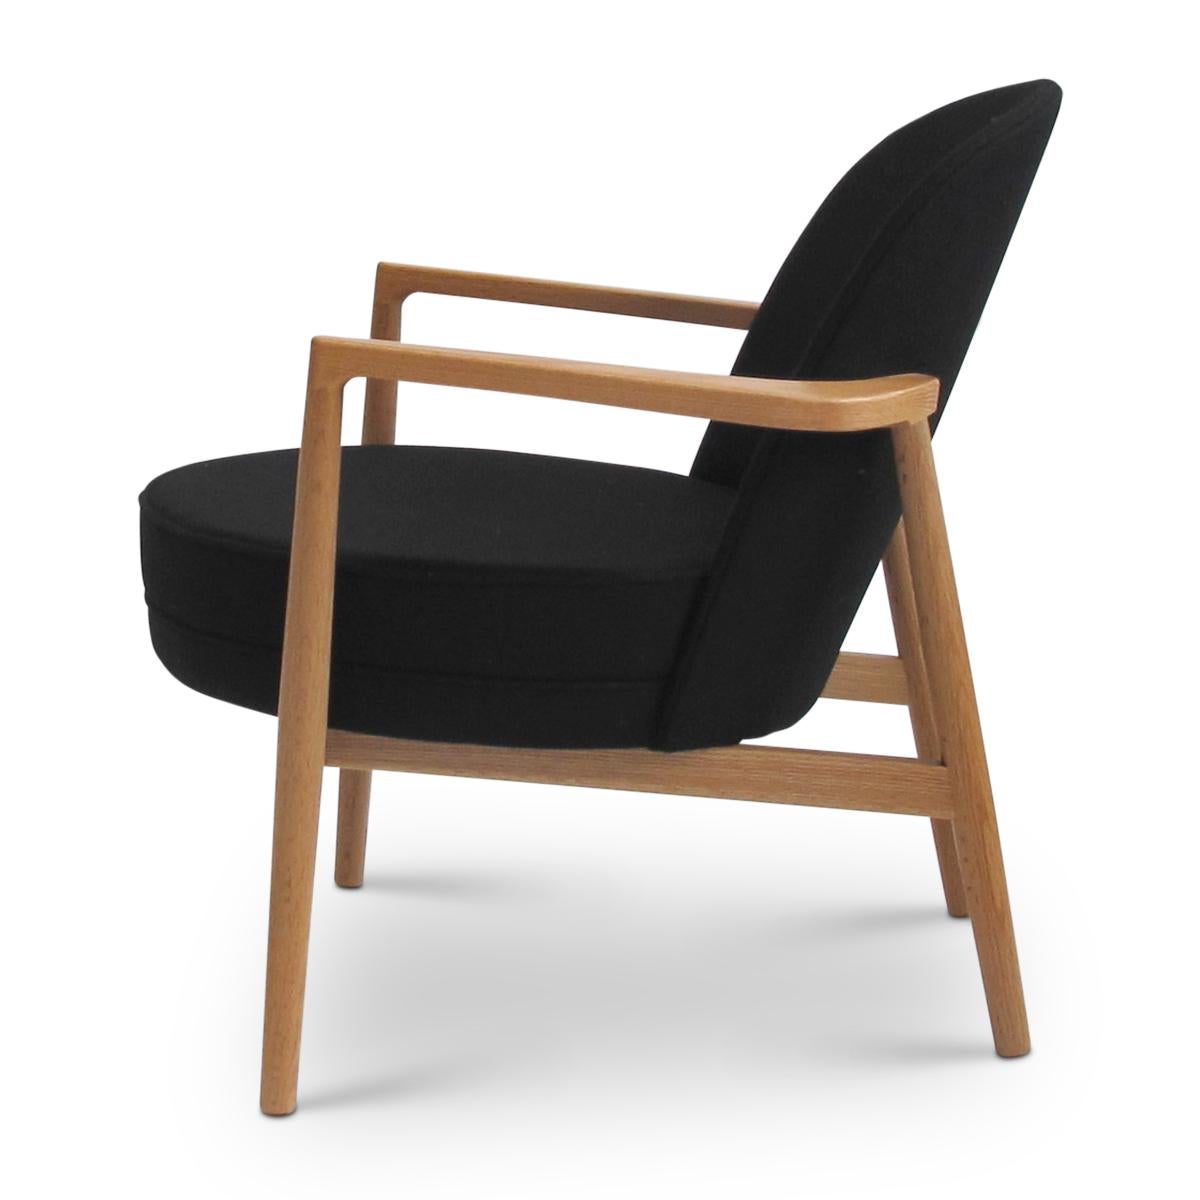 Danish Niels Gammelgaard, Round Chair, Oak Frame Lounge Chair, Black Armchair